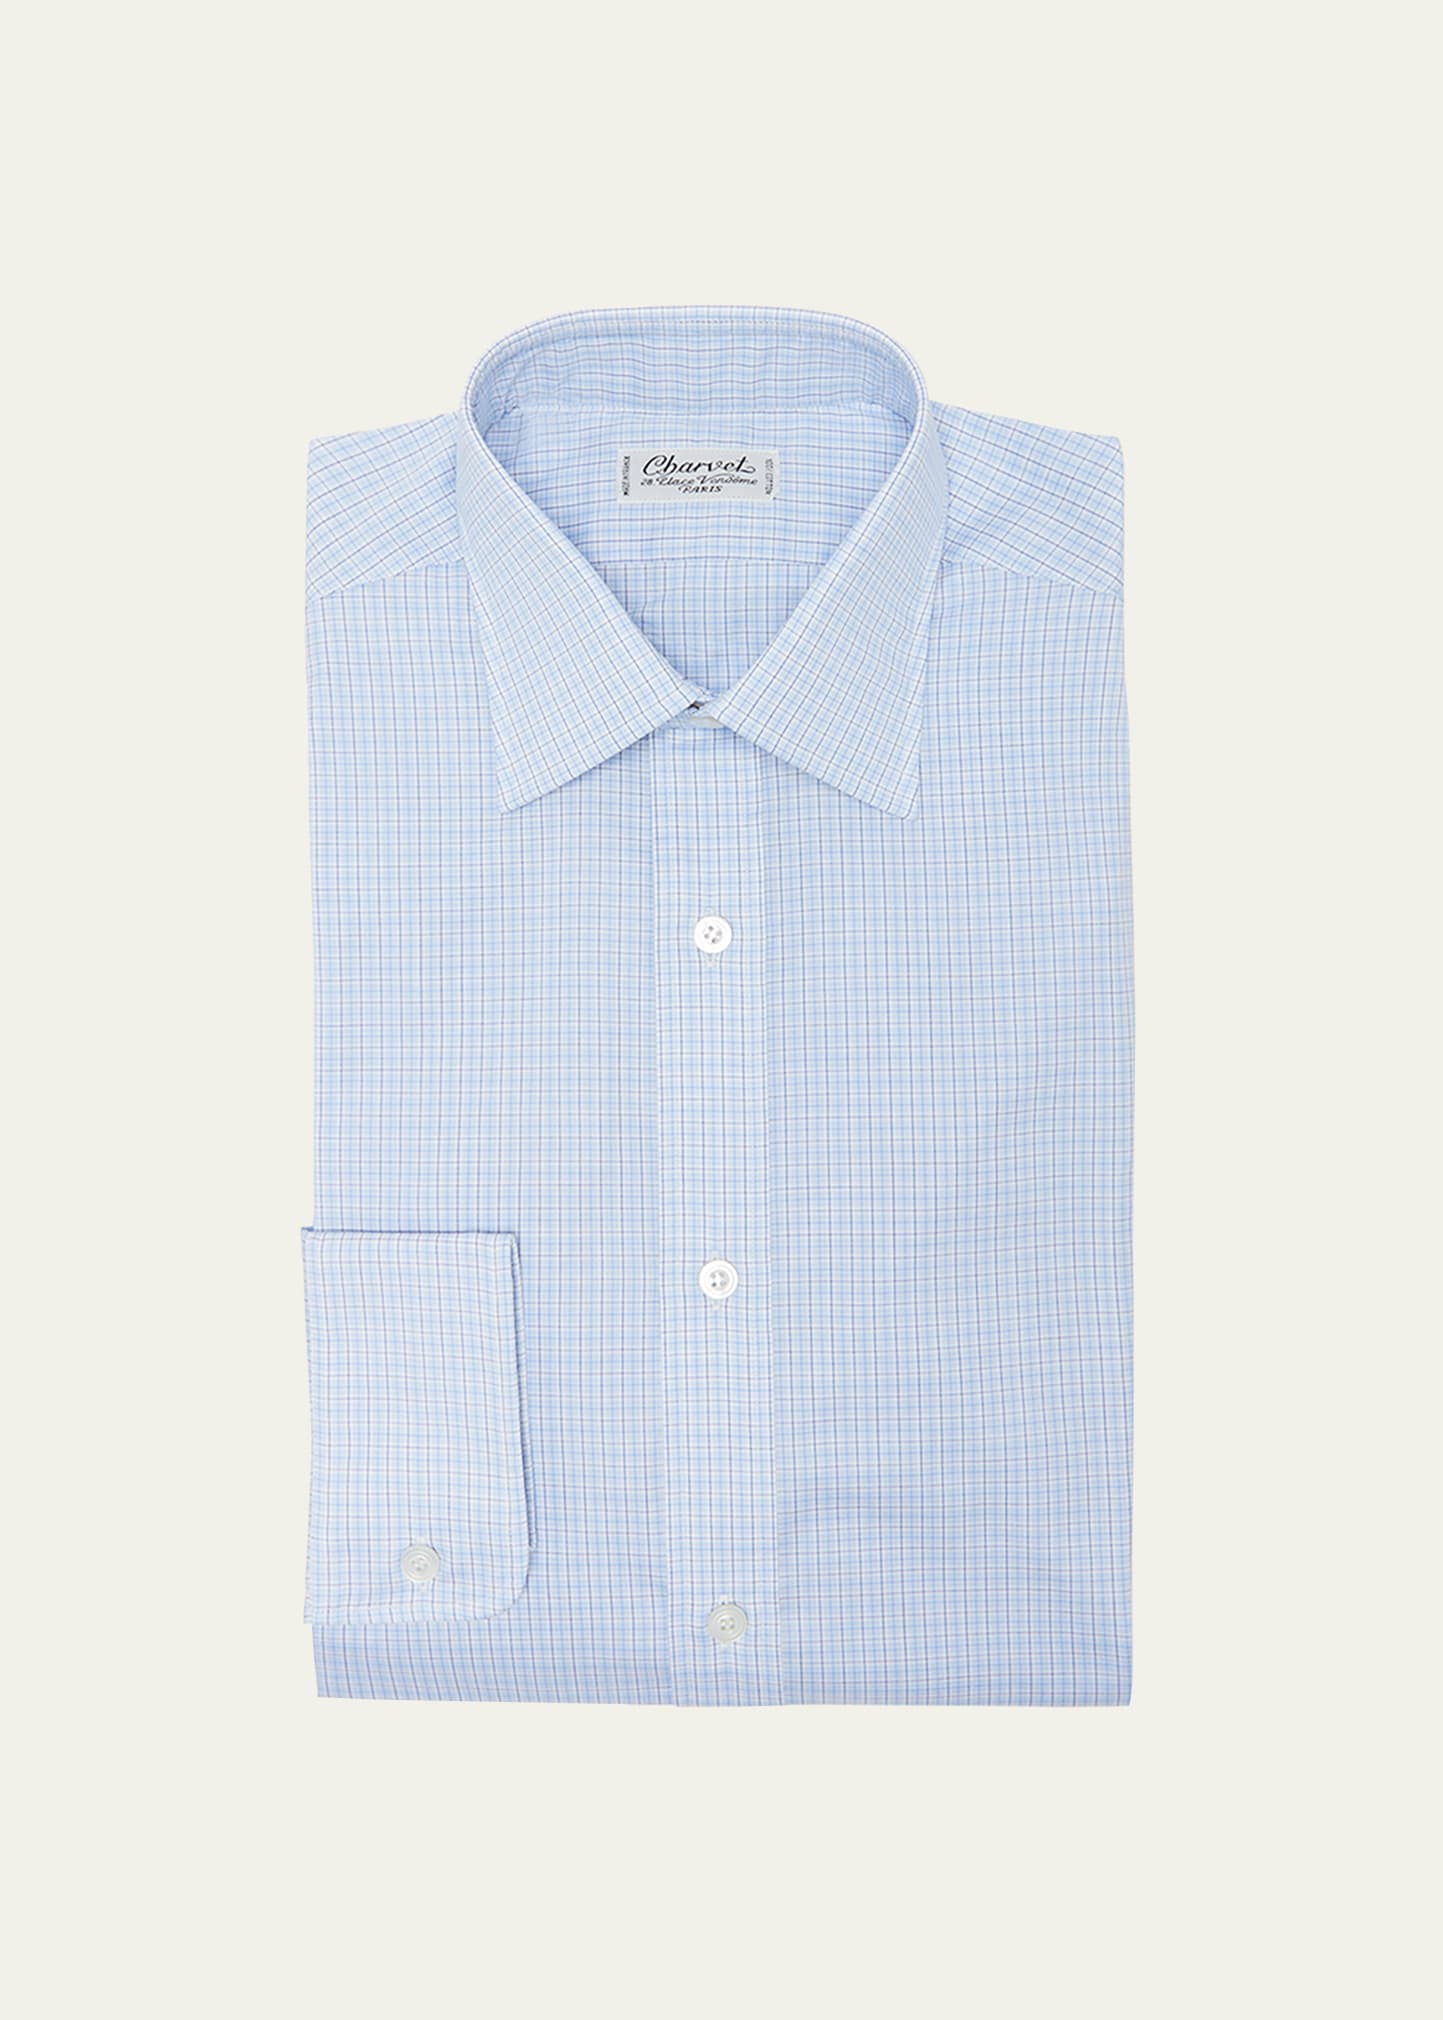 Charvet Men's Multi-check Cotton Dress Shirt In Blue